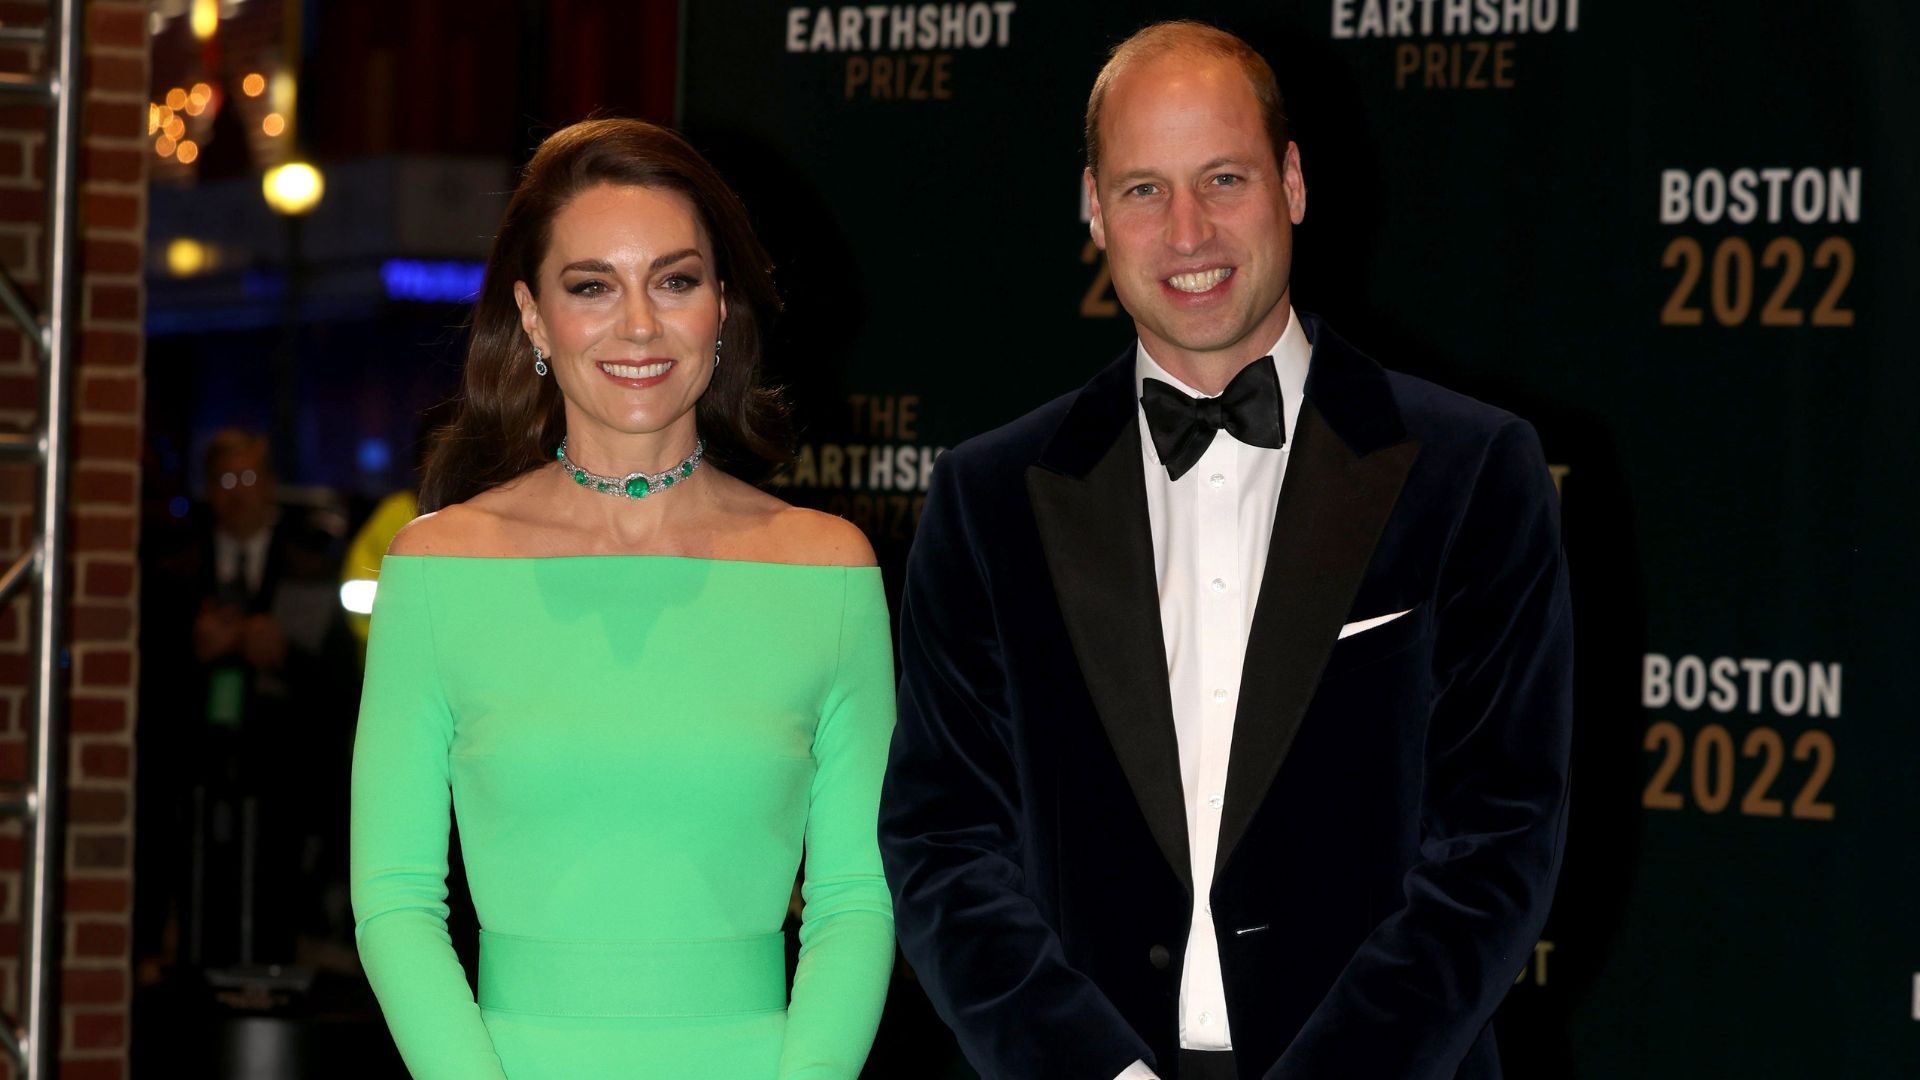 Fonte revela por que príncipe William não estava ao lado de Kate Middleton em vídeo sobre diagnóstico da esposa